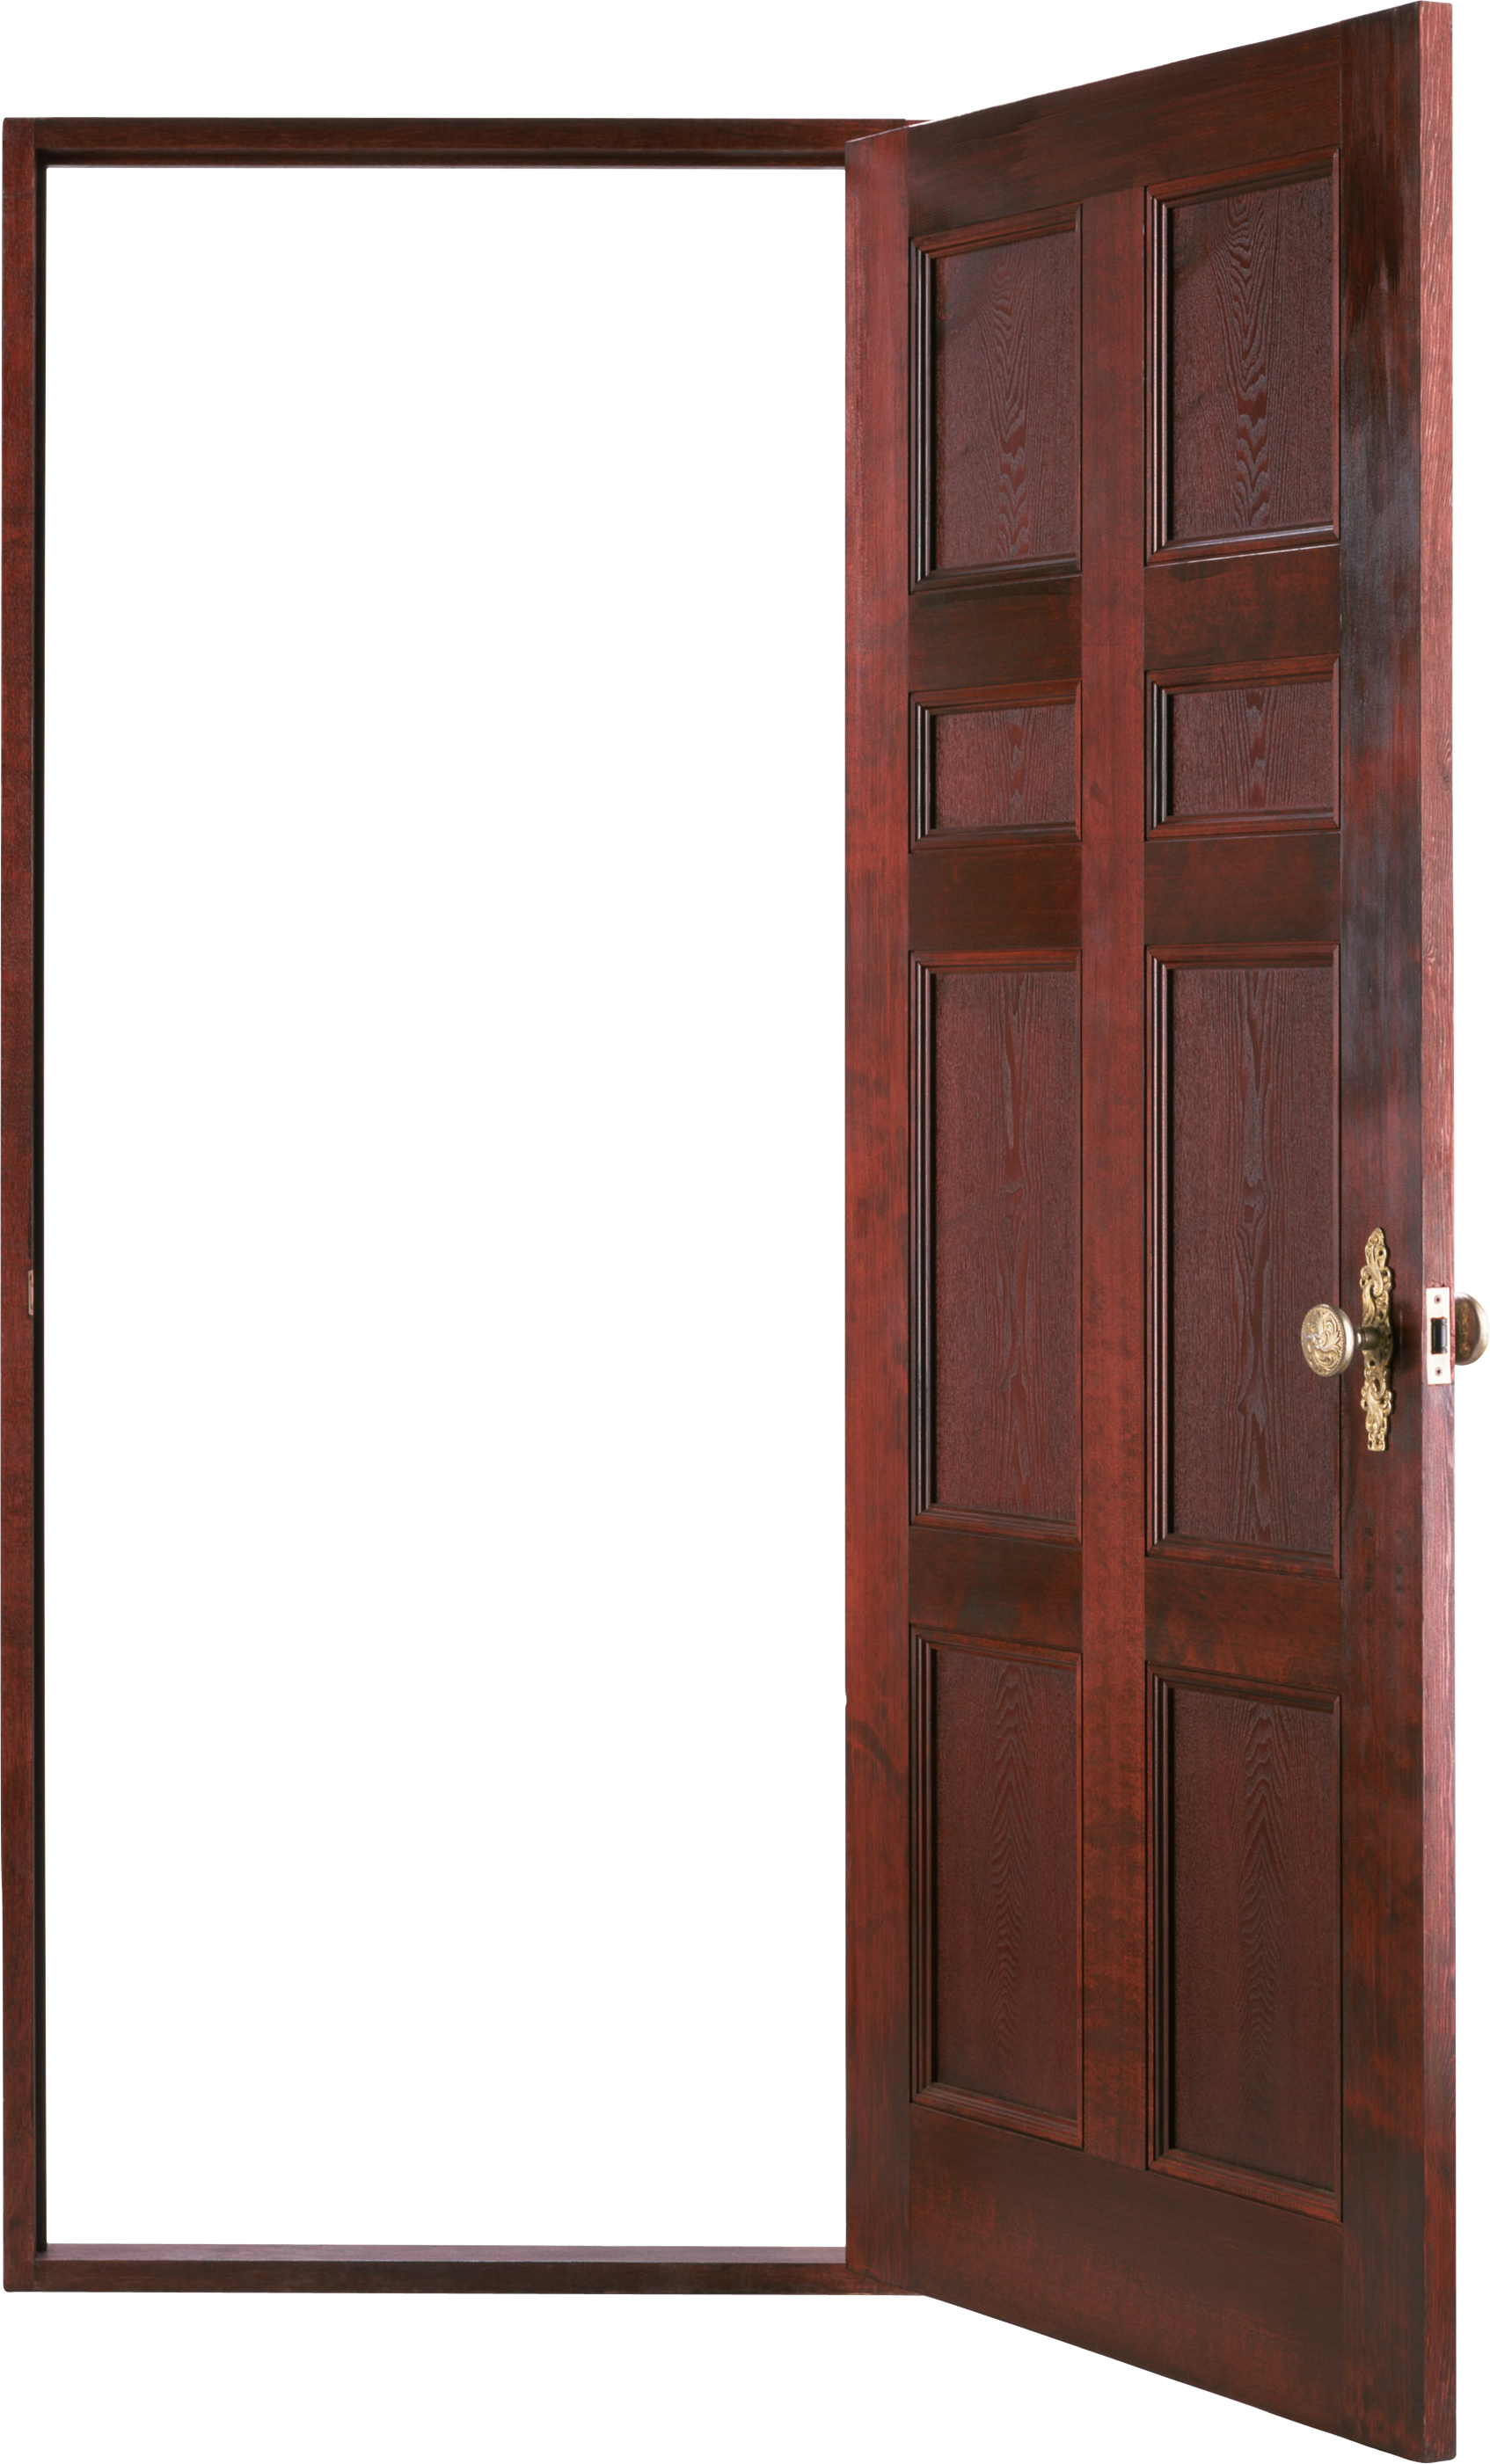 Door clipart doorway. Png images wood open